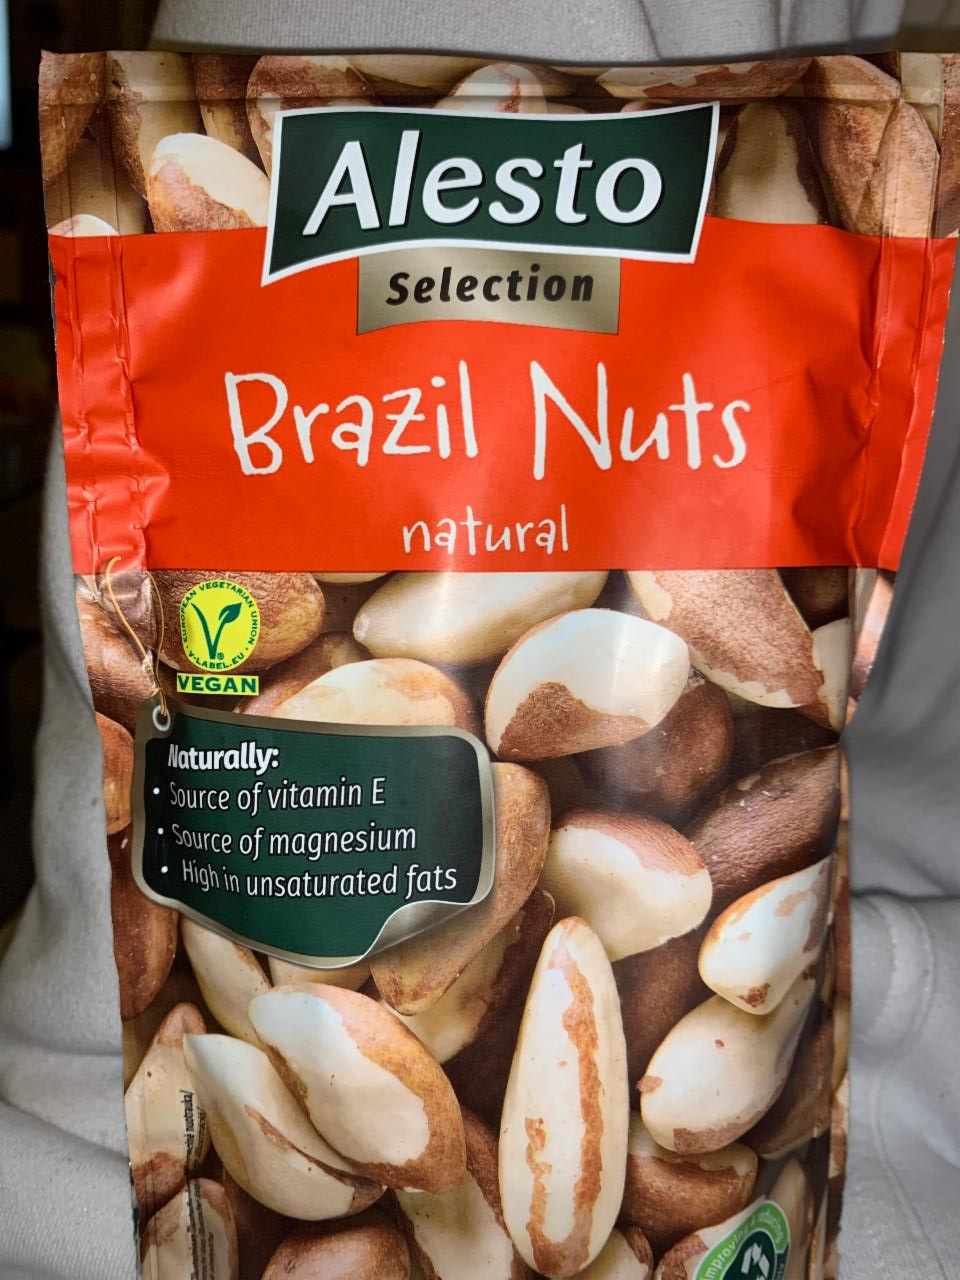 Képek - Brazil Nuts natural Alesto